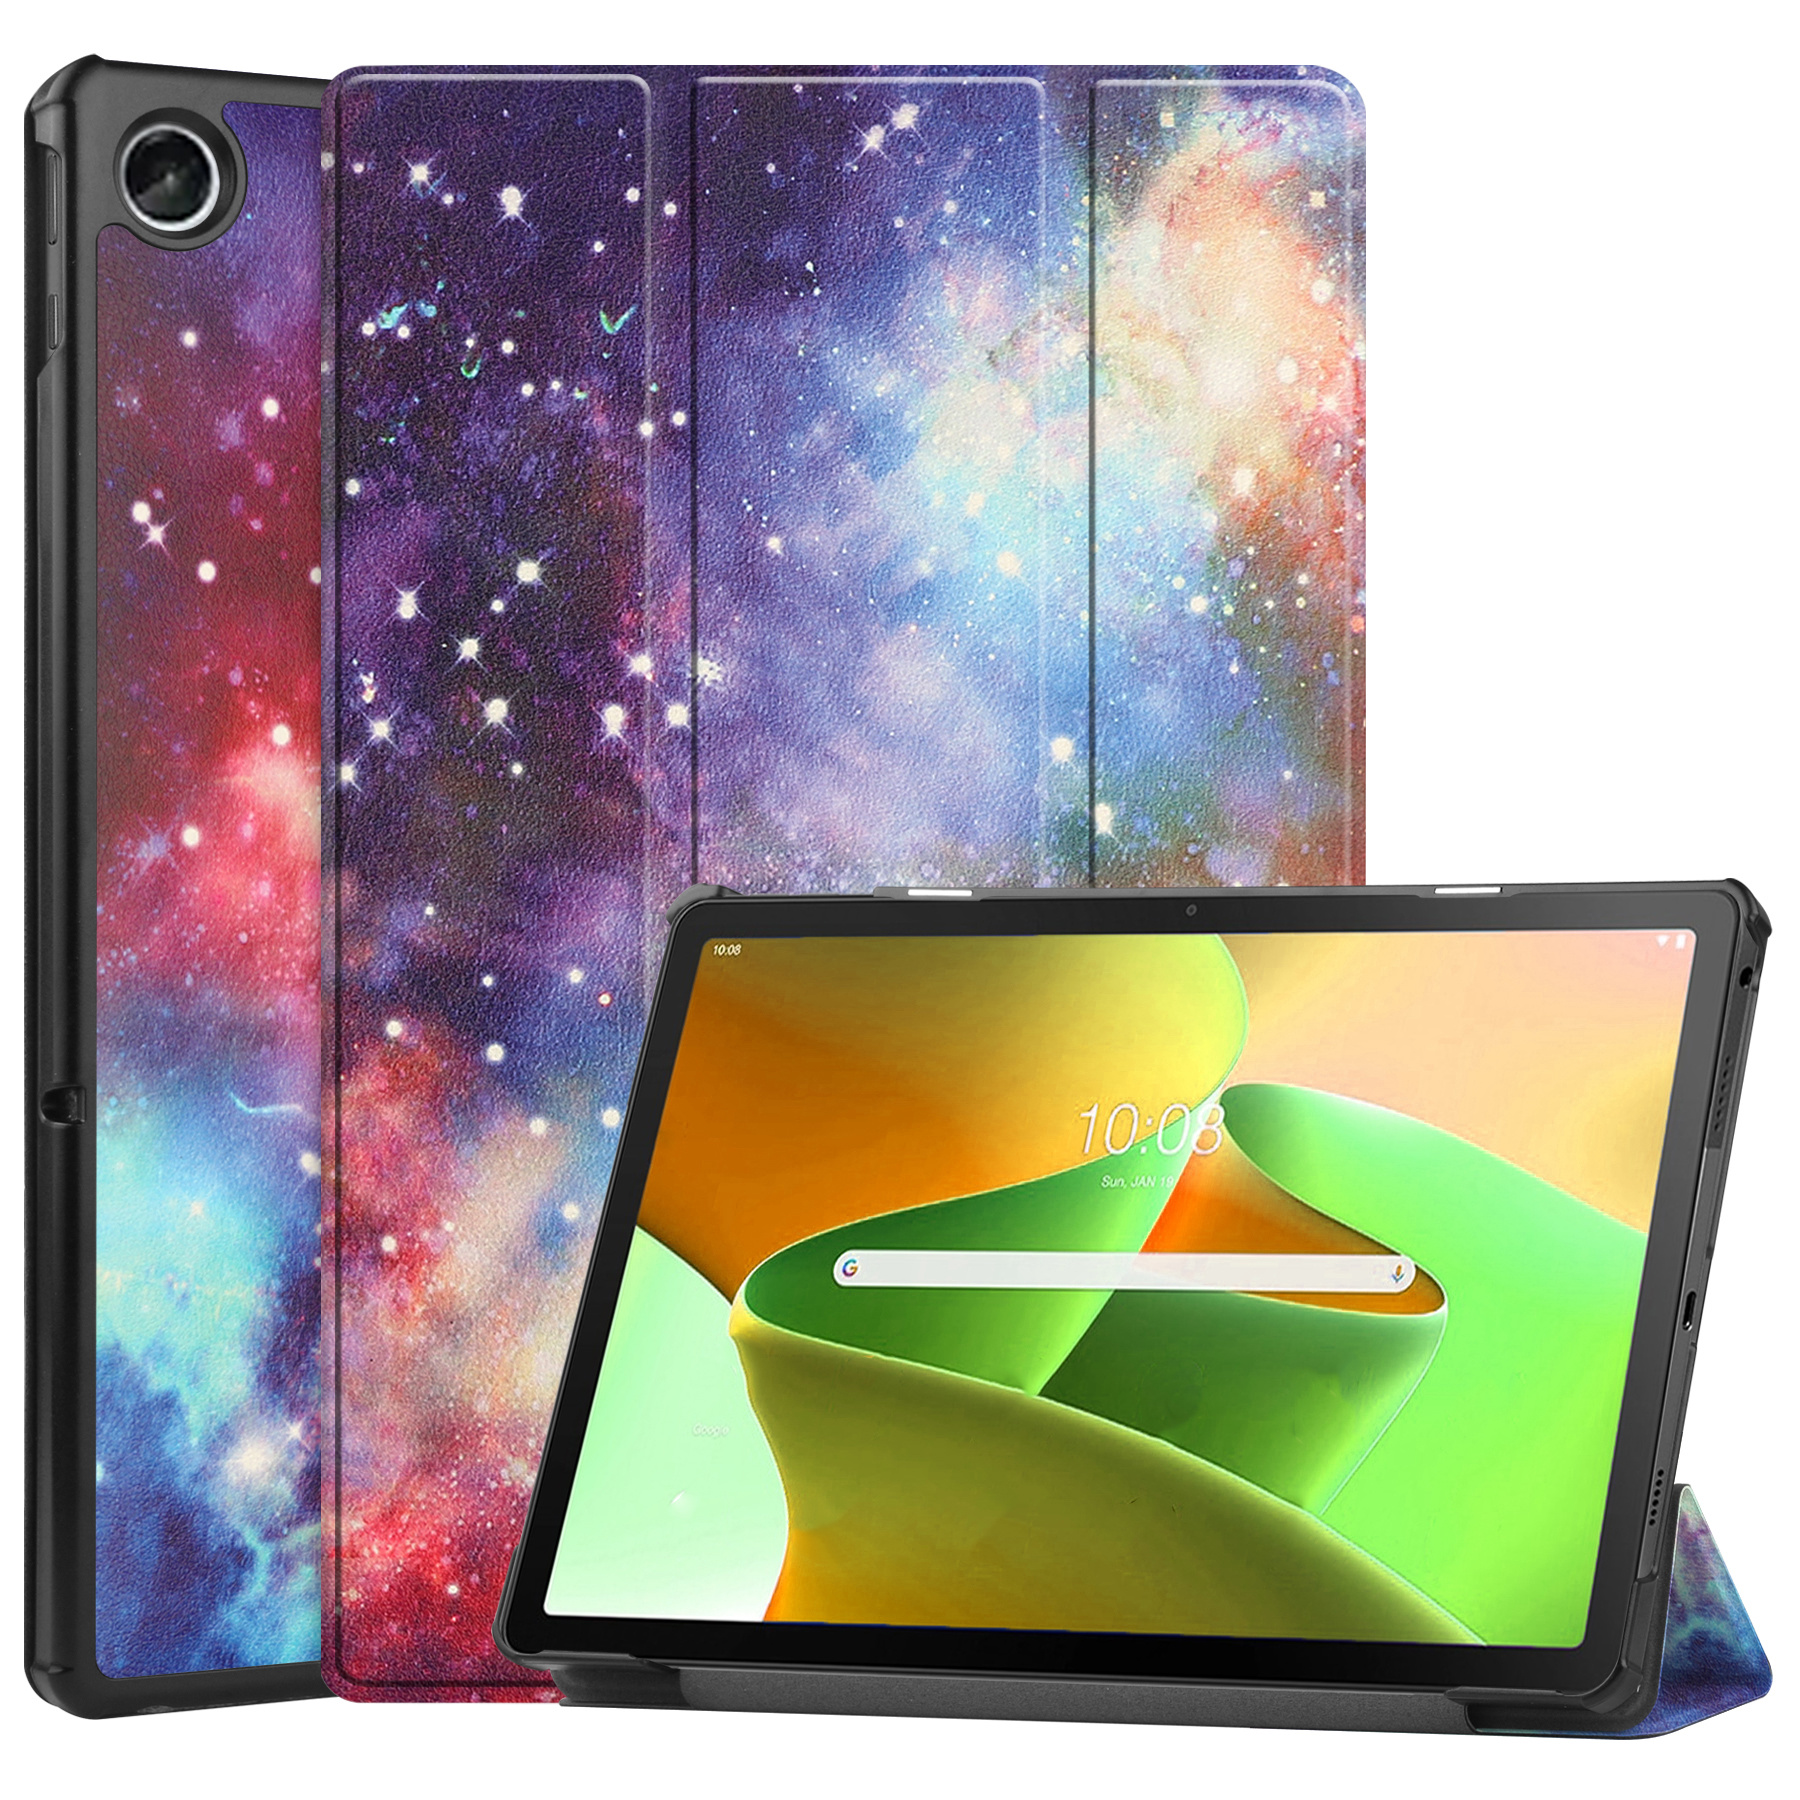 Nomfy Lenovo Tab M10 Plus Hoesje (3e generatie) Book Case Galaxy - Lenovo Tab M10 Plus (Gen 3) Hoes Hardcover Hoesje Galaxy